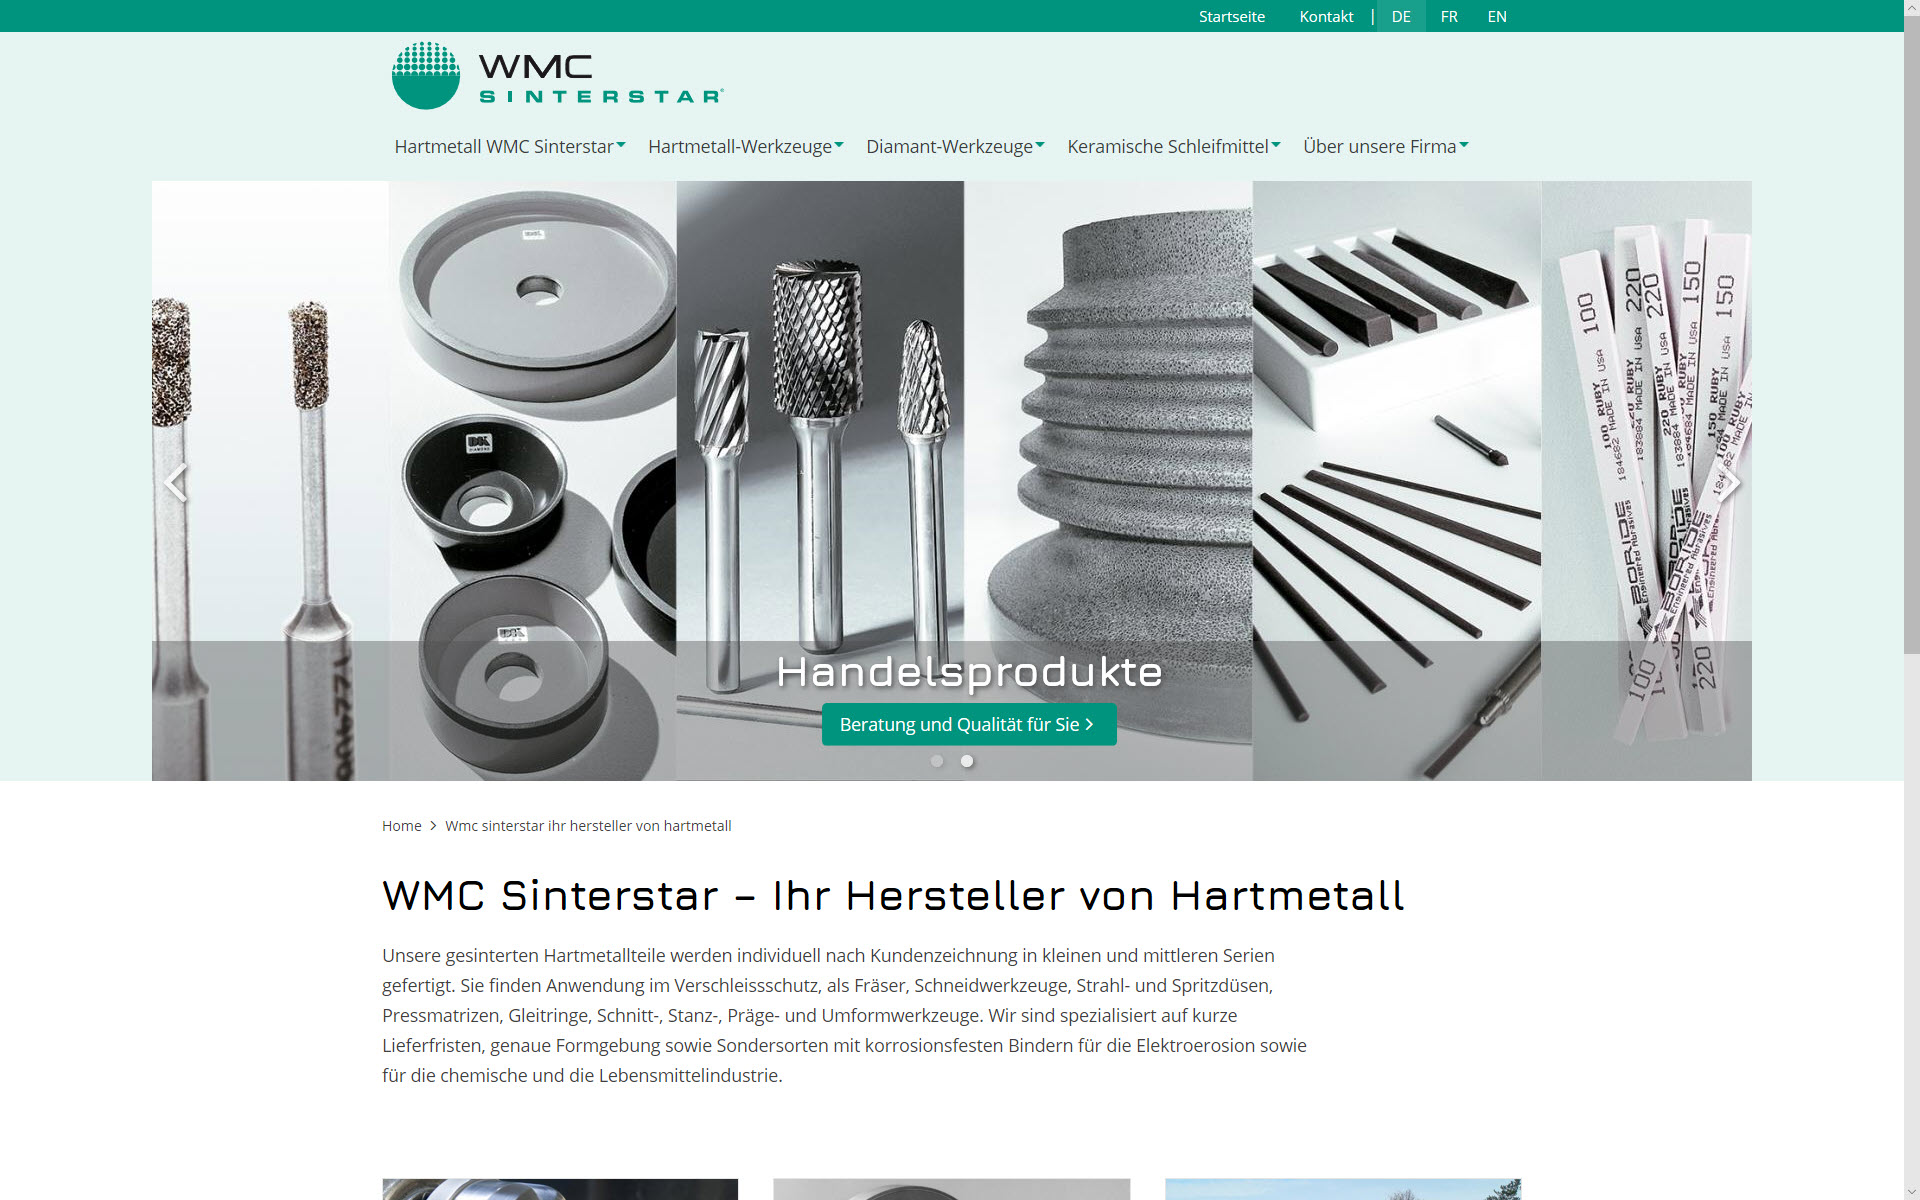 wmc-sinterstar